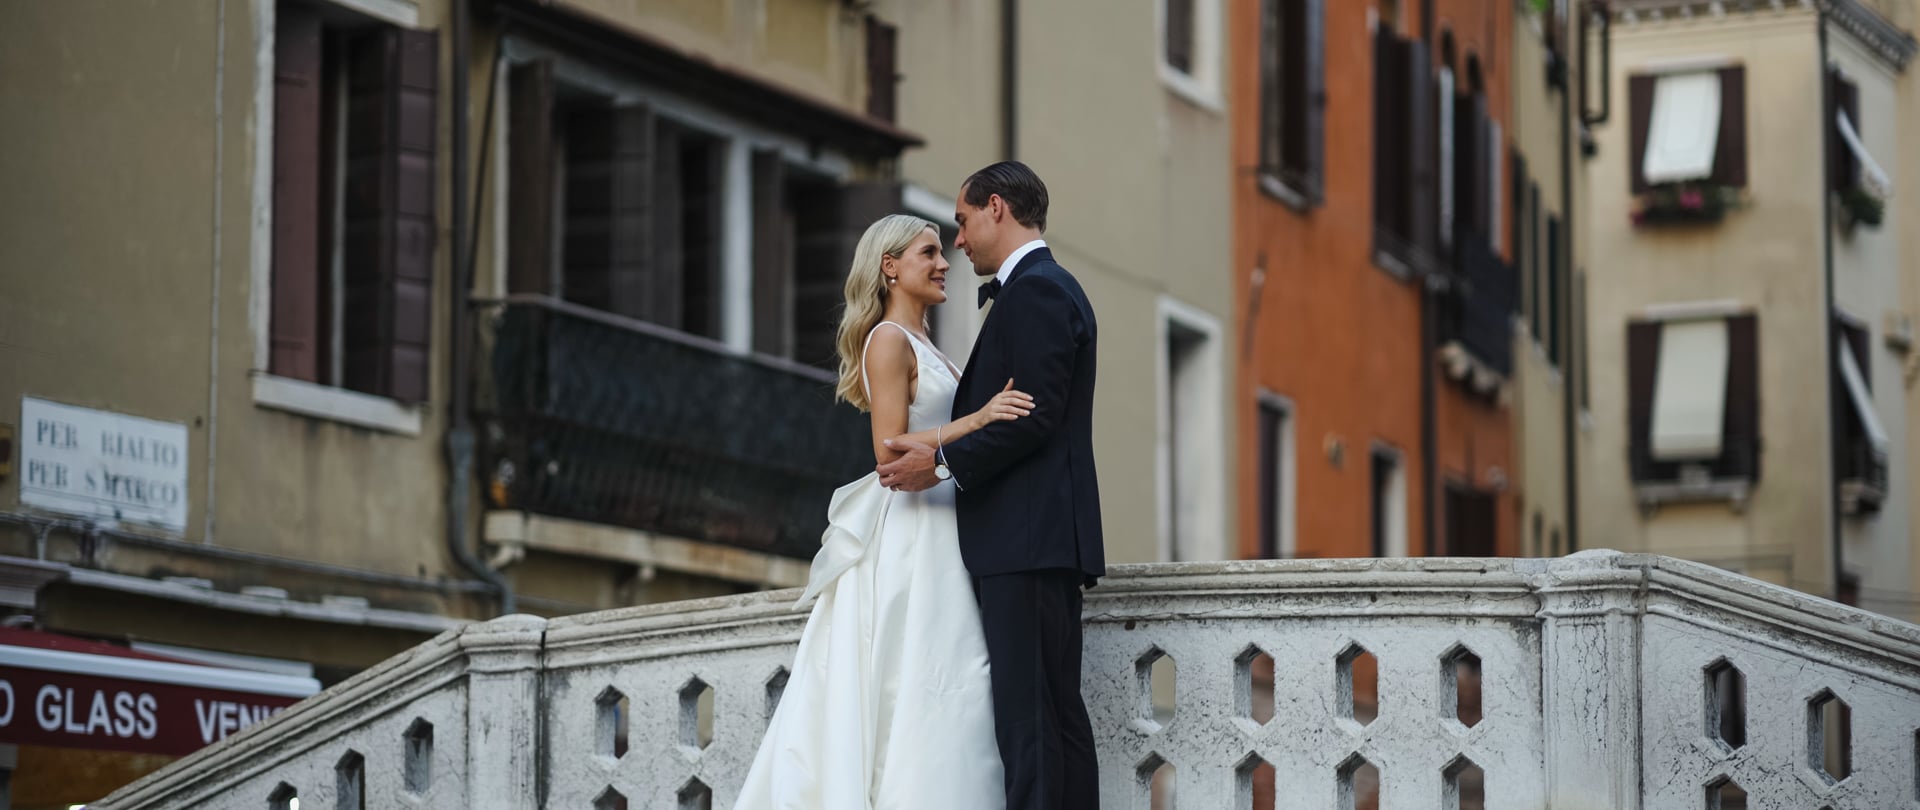 Georgina & Hugh Wedding Video Filmed at Venice, Italy